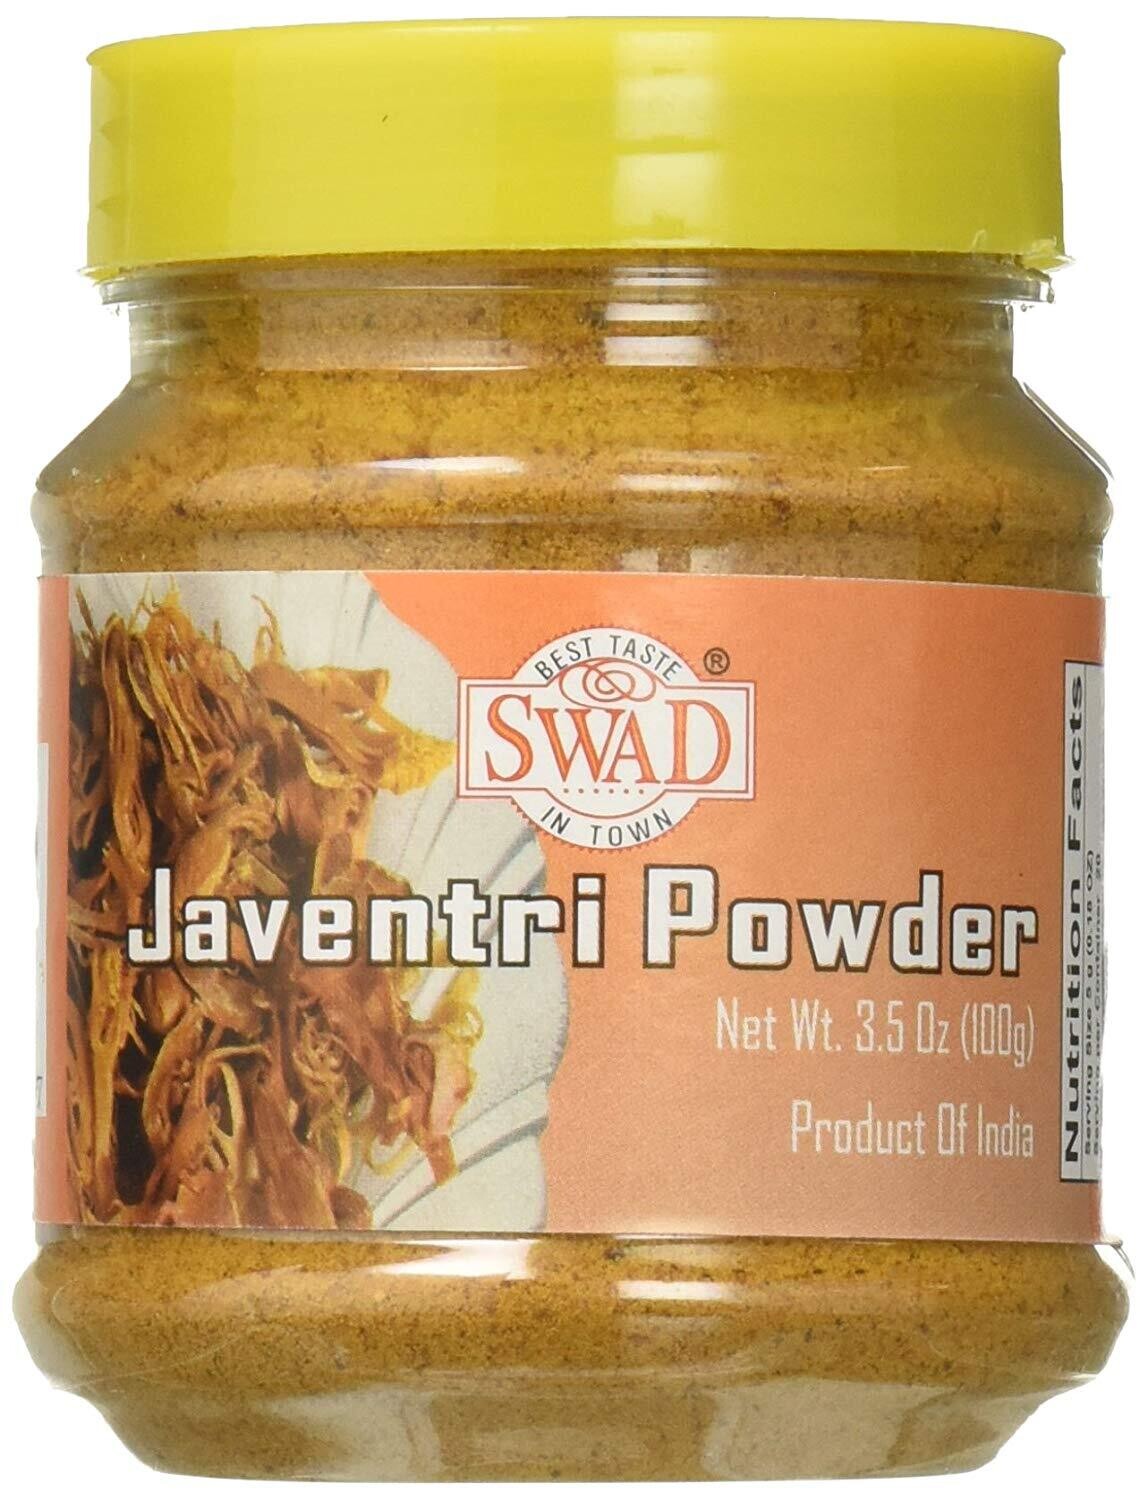 Swad Javentri Powder 100g (Mace) Jar